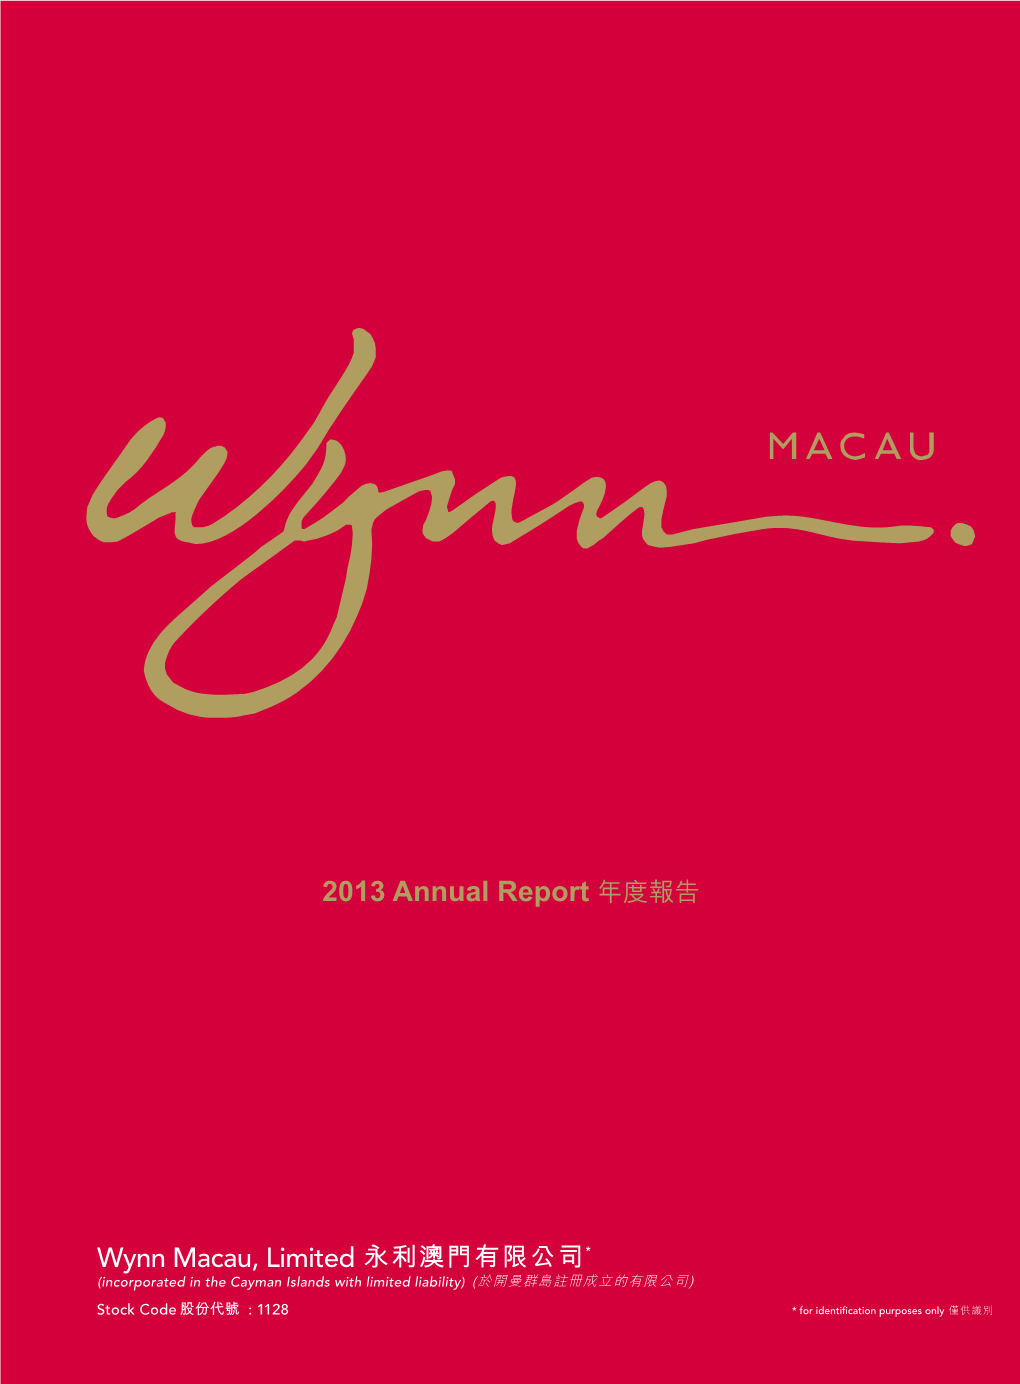 Wynn Macau, Limited Wynn Rua Cidade De Sintra, NAPE, Macau 2 Corporate Information